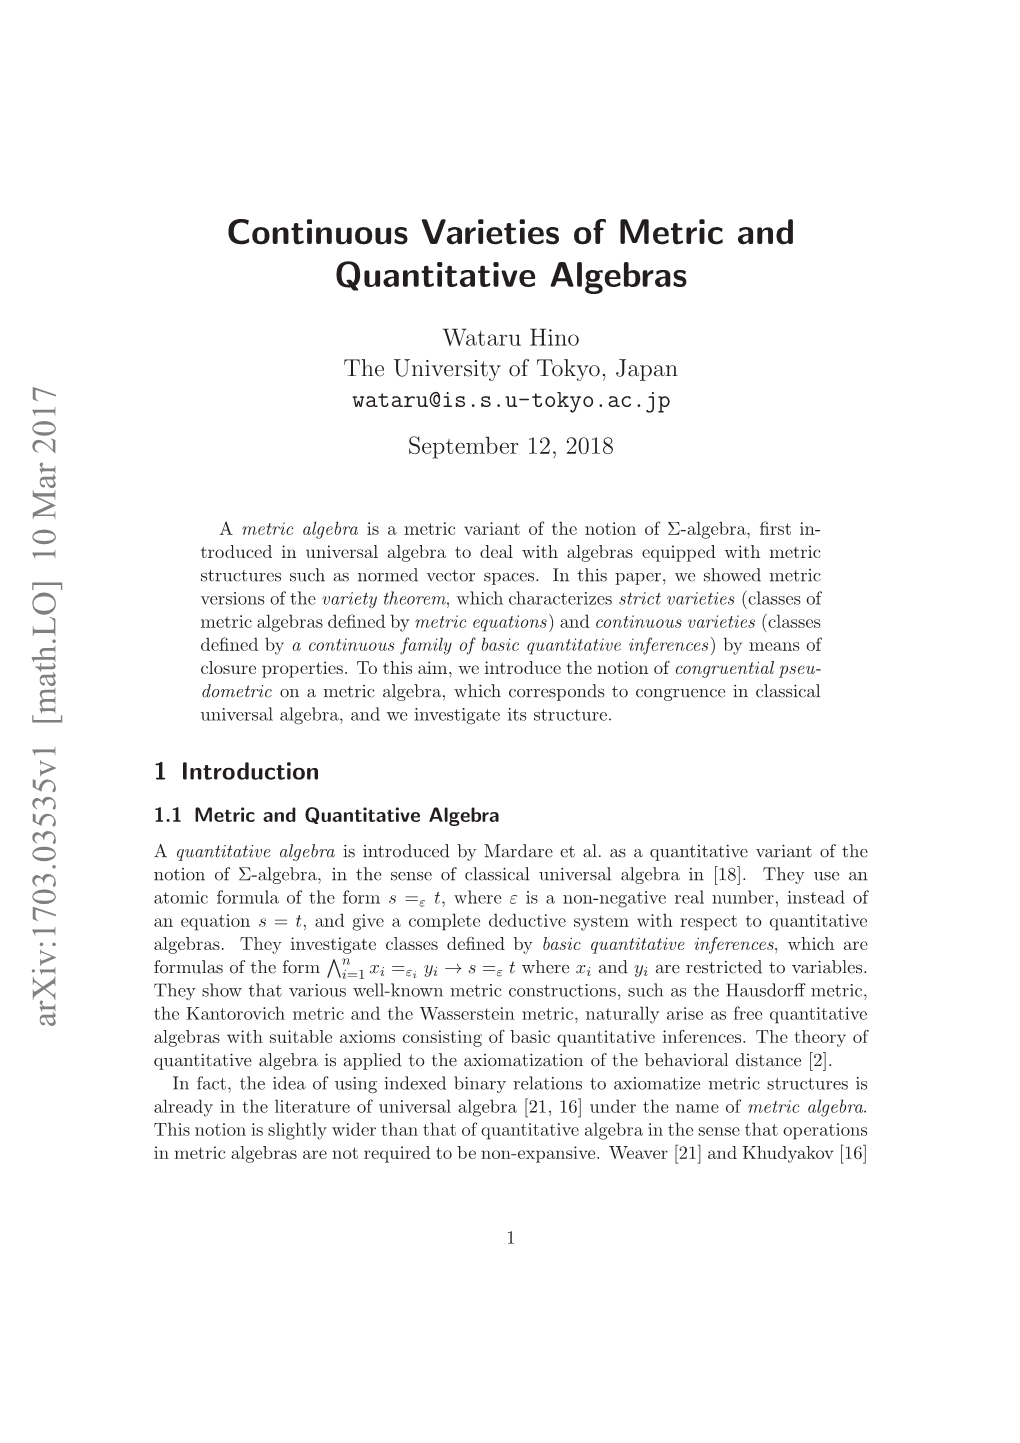 Continuous Varieties of Metric and Quantitative Algebras